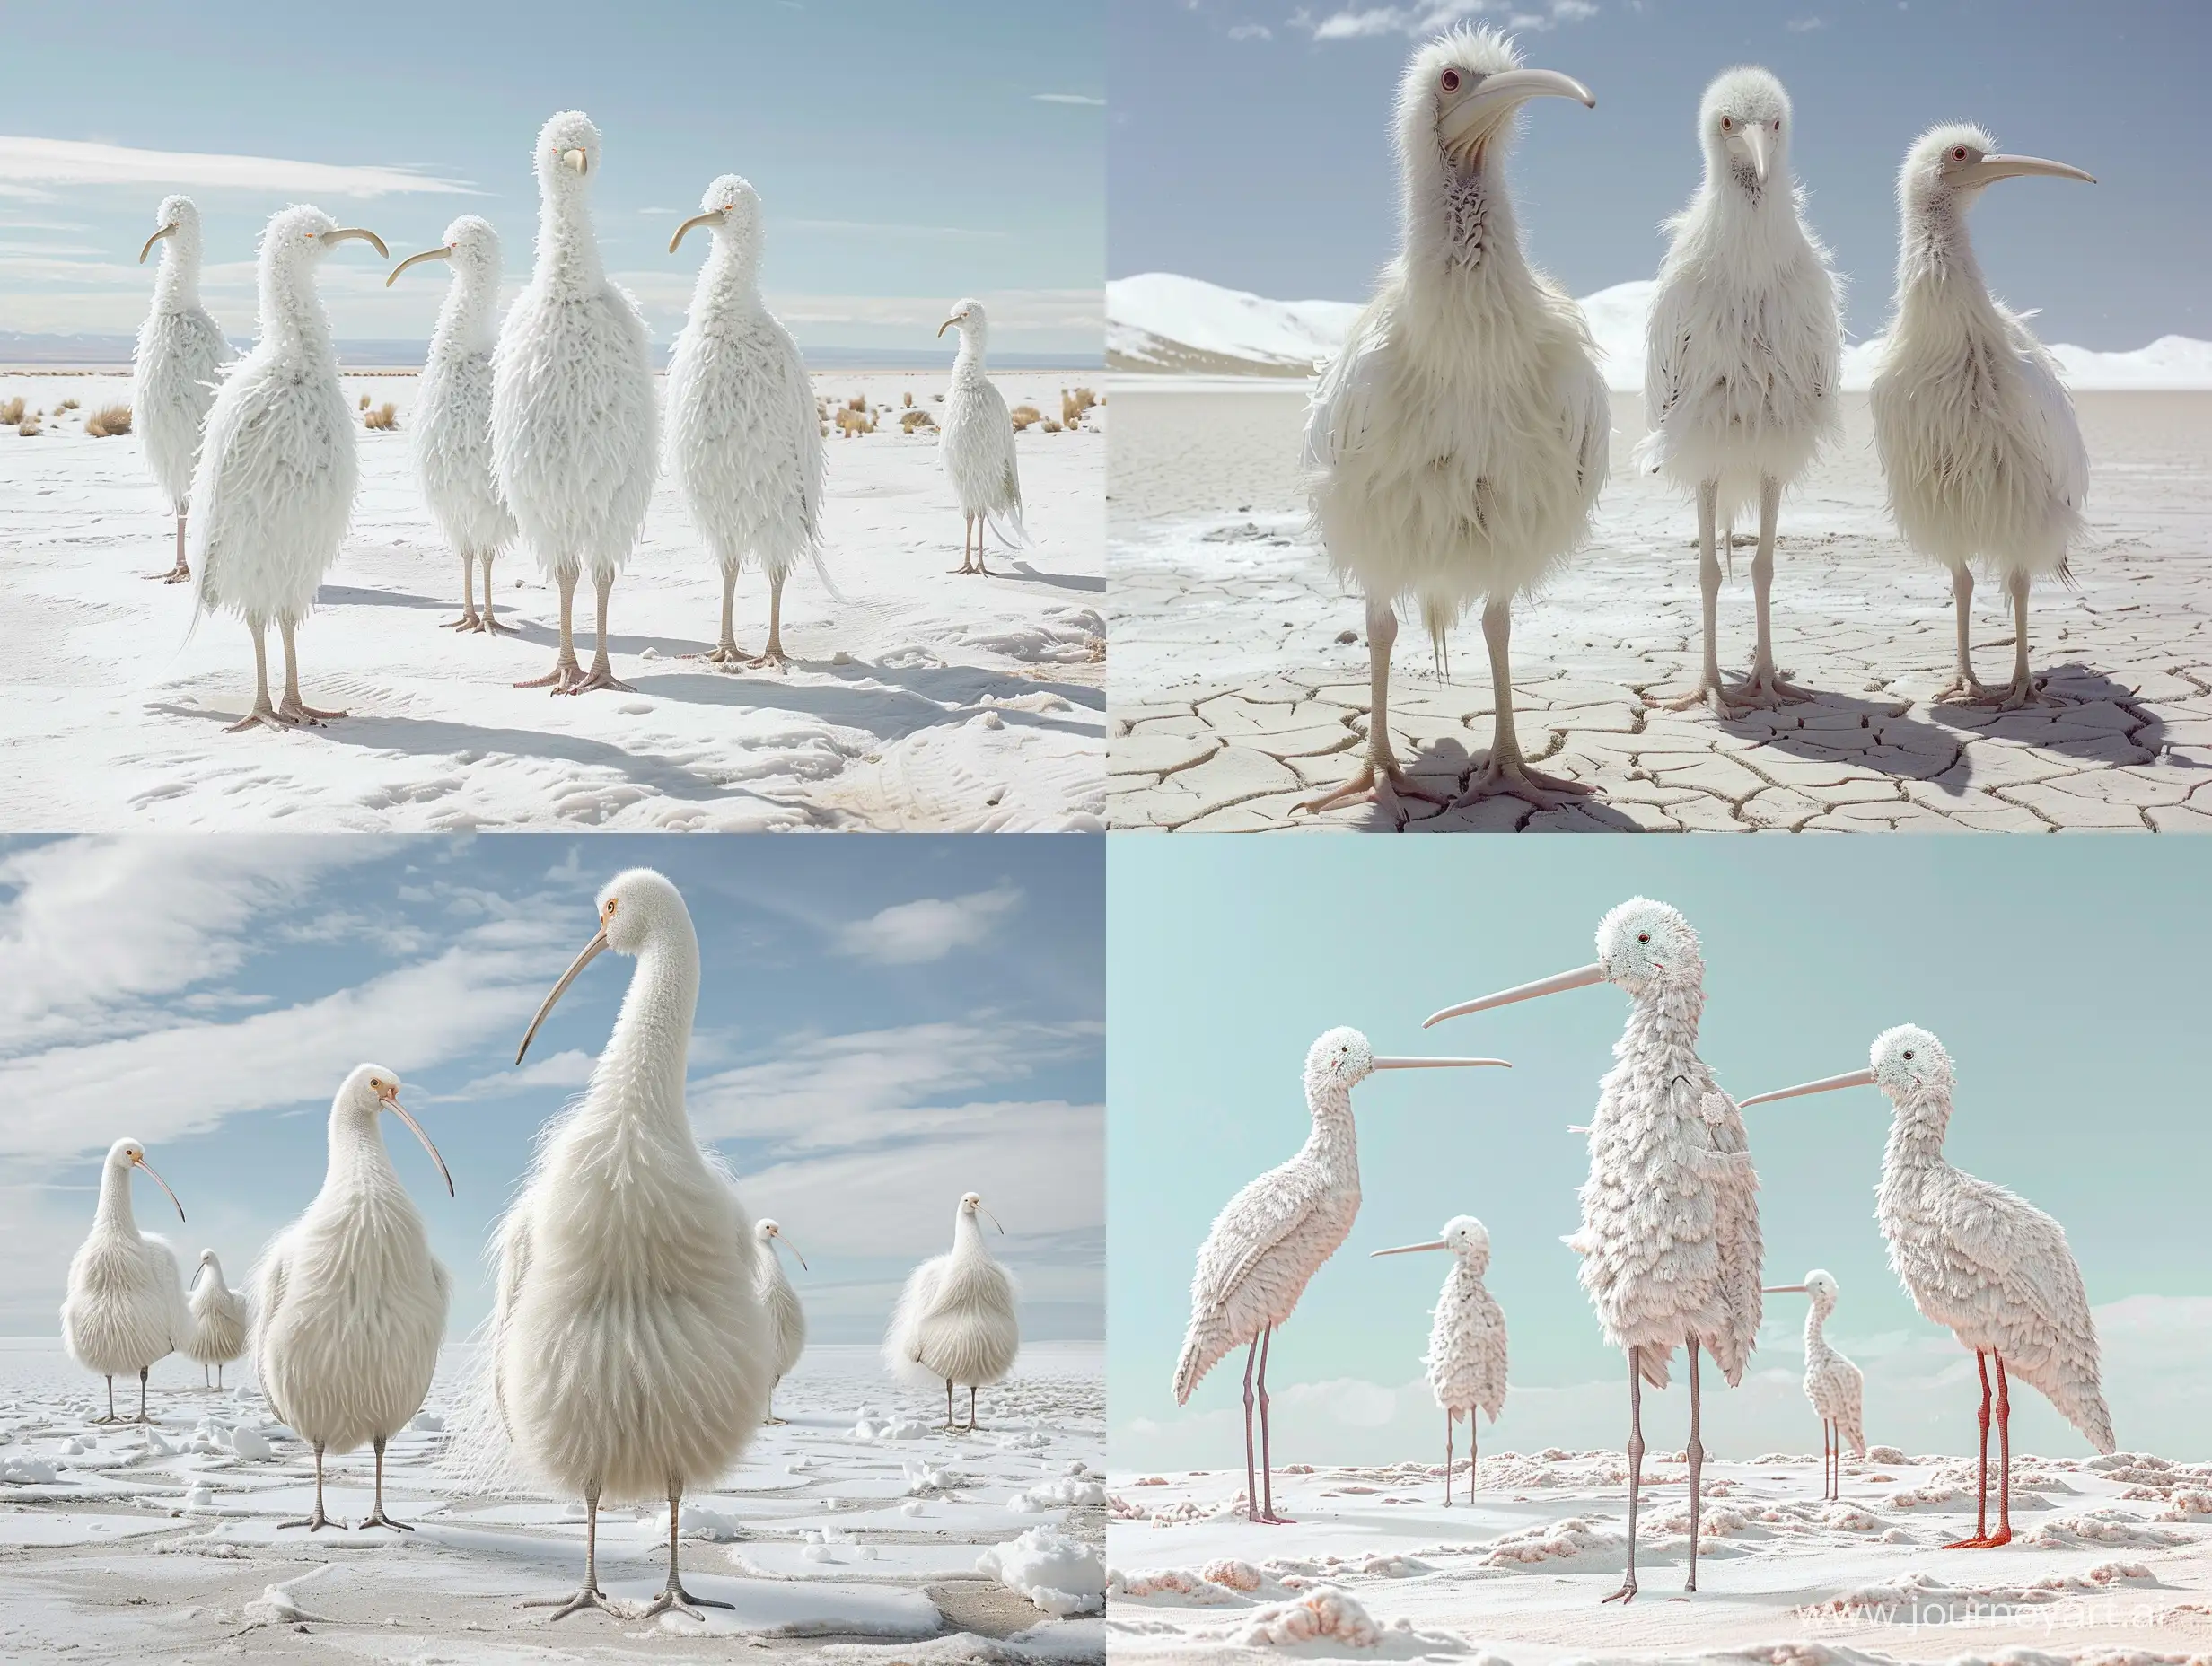 Высокие белые птицы киви похожие на человека стоят посреди снежной пустыни